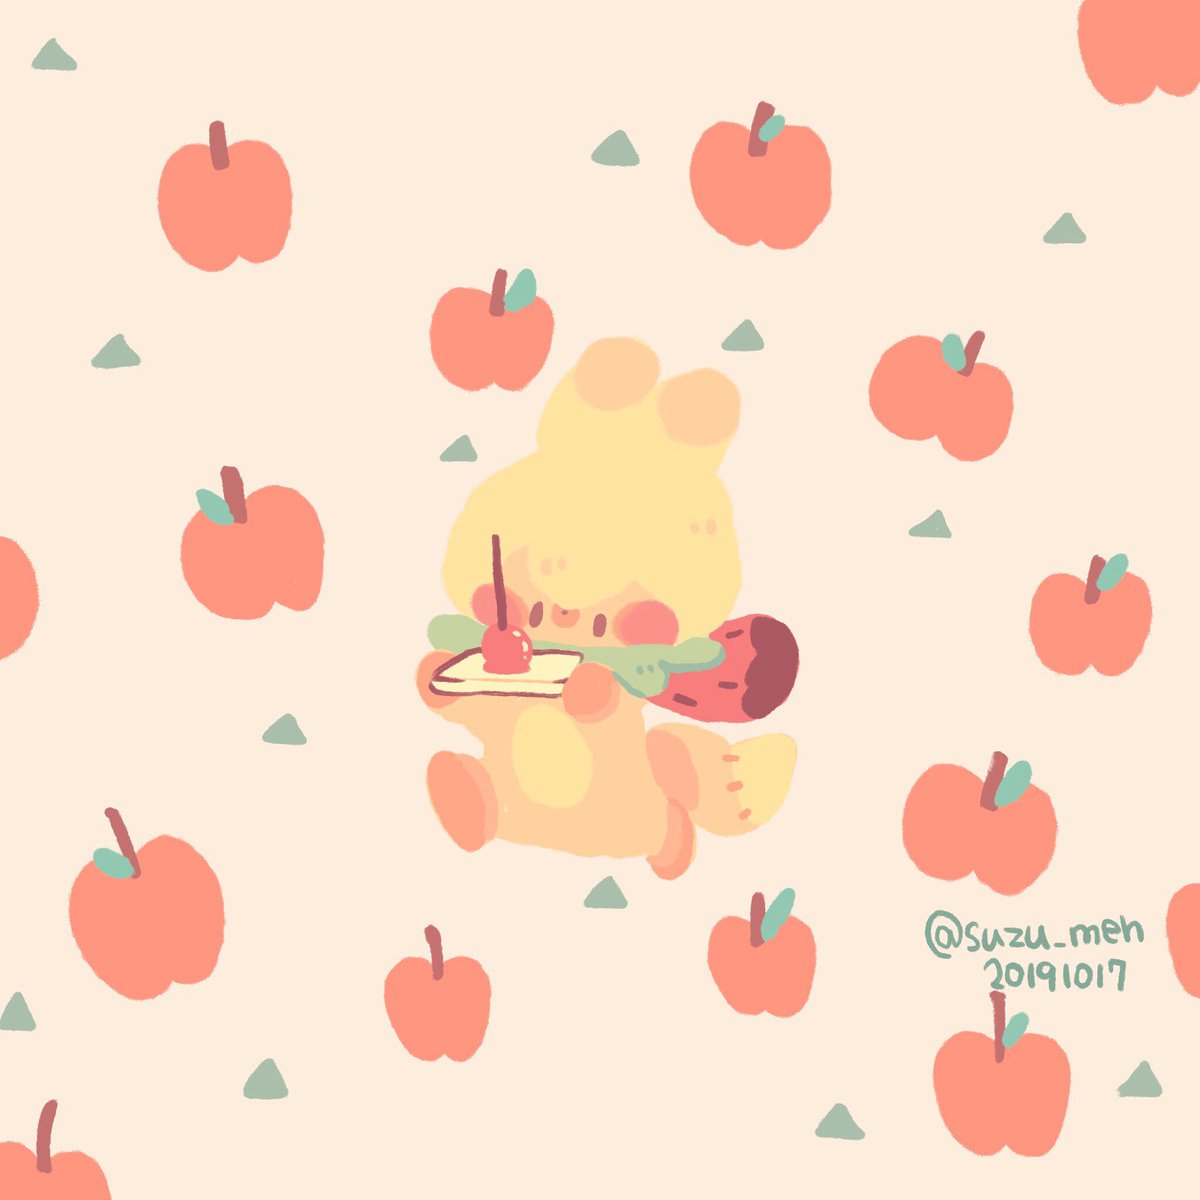 ササクラ りんご飴 食べてみたいなぁ イラスト 絵 絵描き 癒し かわいい キツネ りんご飴 りんご いちご メーとスズメの友達